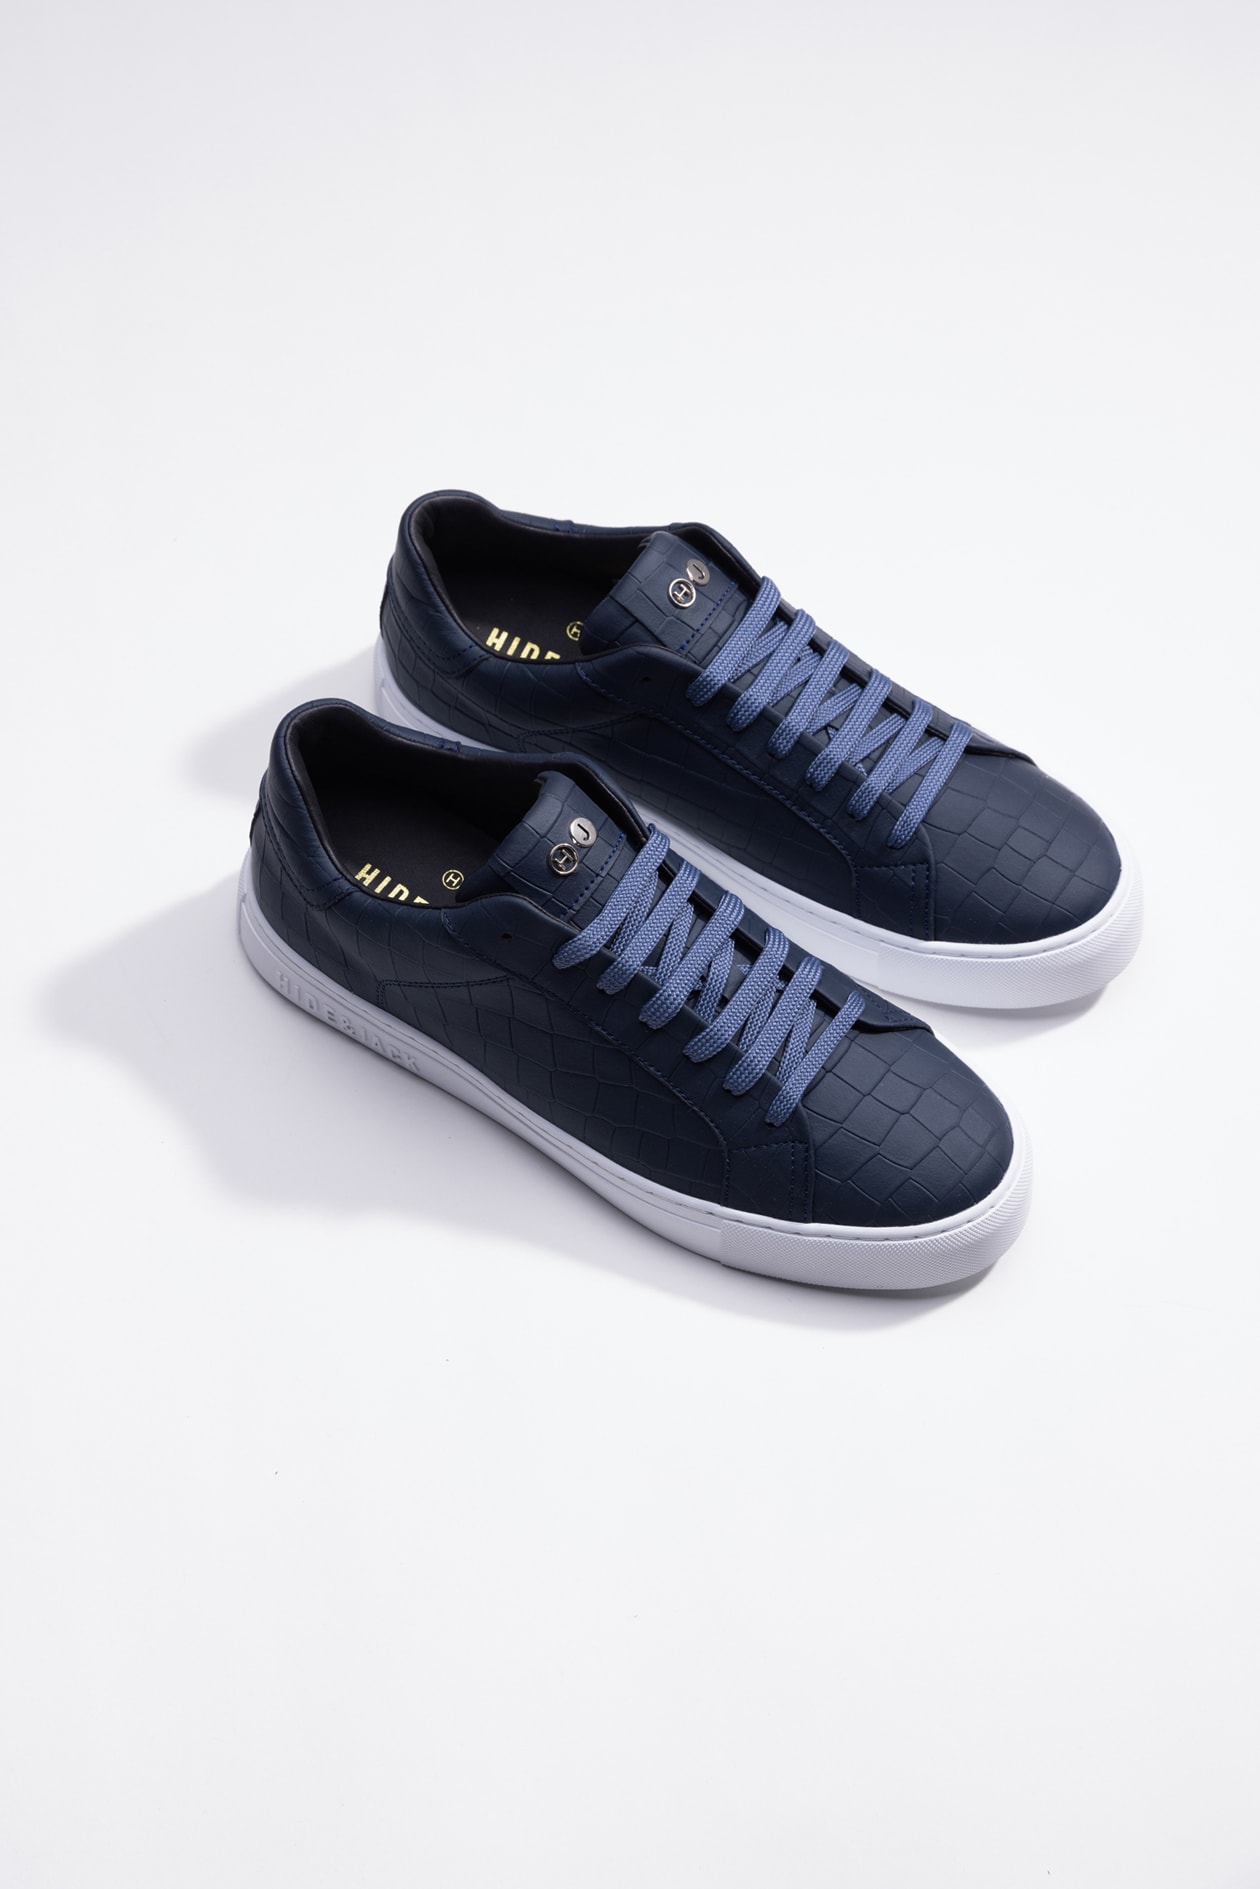 Hide & Jack Low Top Sneaker - Essence Blue White